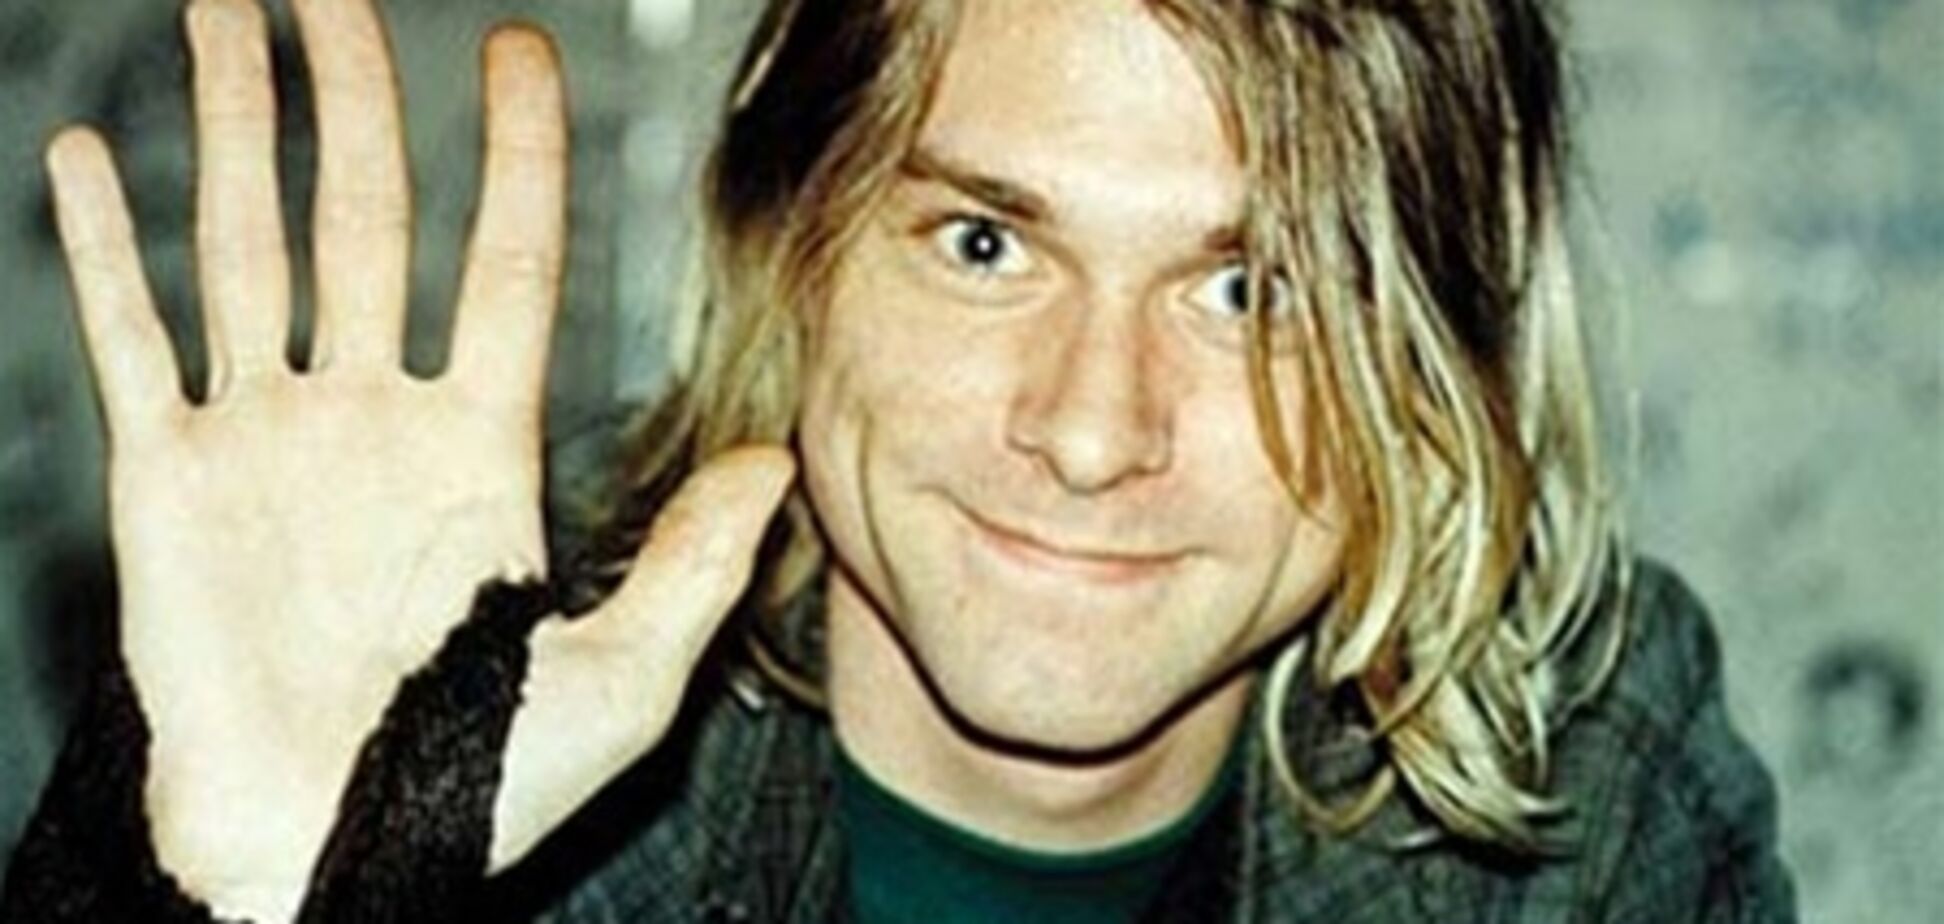 20 февраля вокалисту Nirvana Курту Кобейну исполнилось бы 46 лет